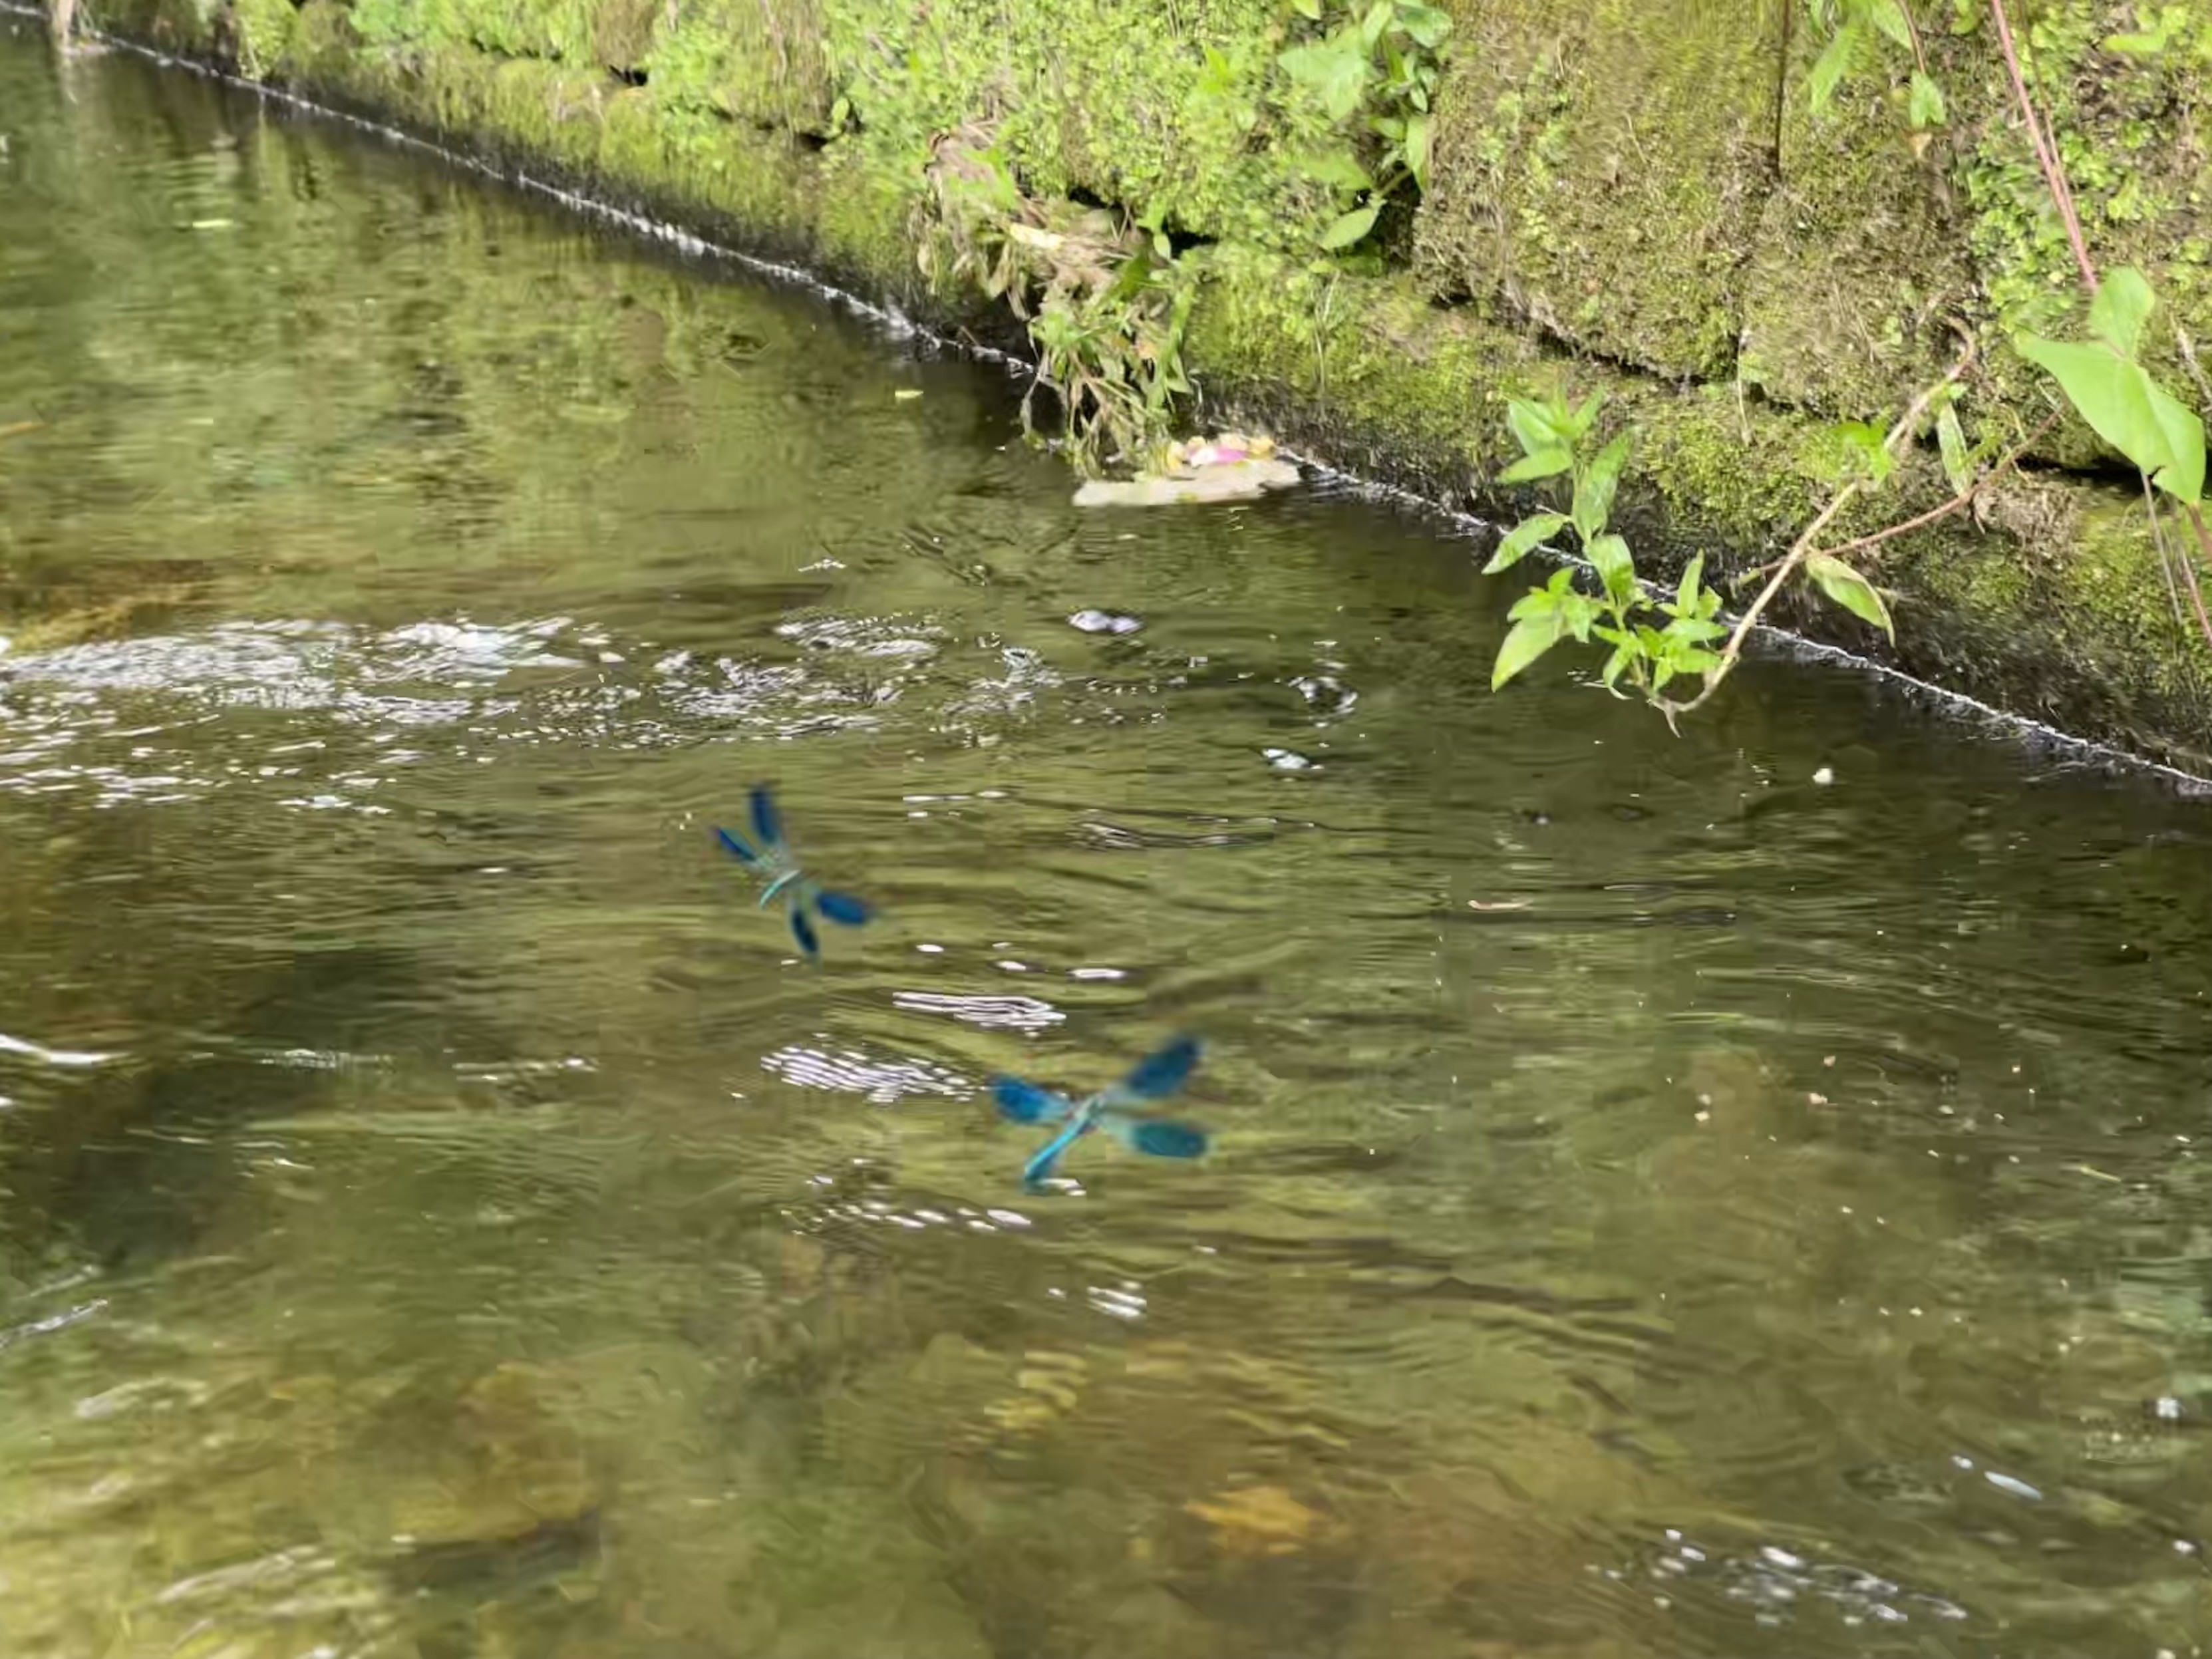 Zwei blaue Libellen fliegen über einem Bach mit moosbedeckten Steinen und grünen Pflanzen an den Rändern.